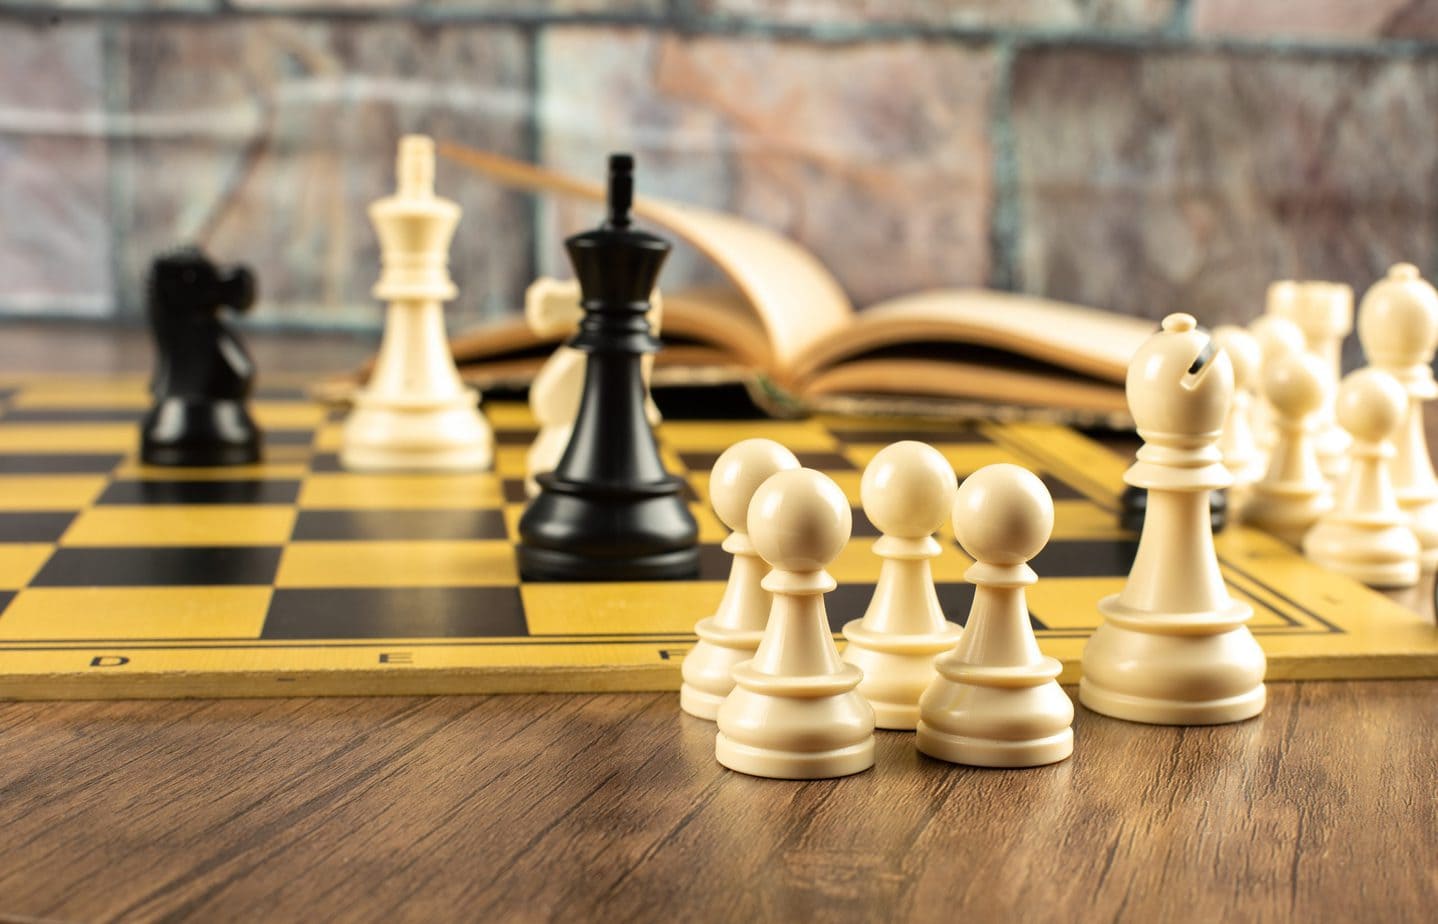 Czy da się szybko opanować schematy szachowe, aby wygrywać w kilku ruchach?